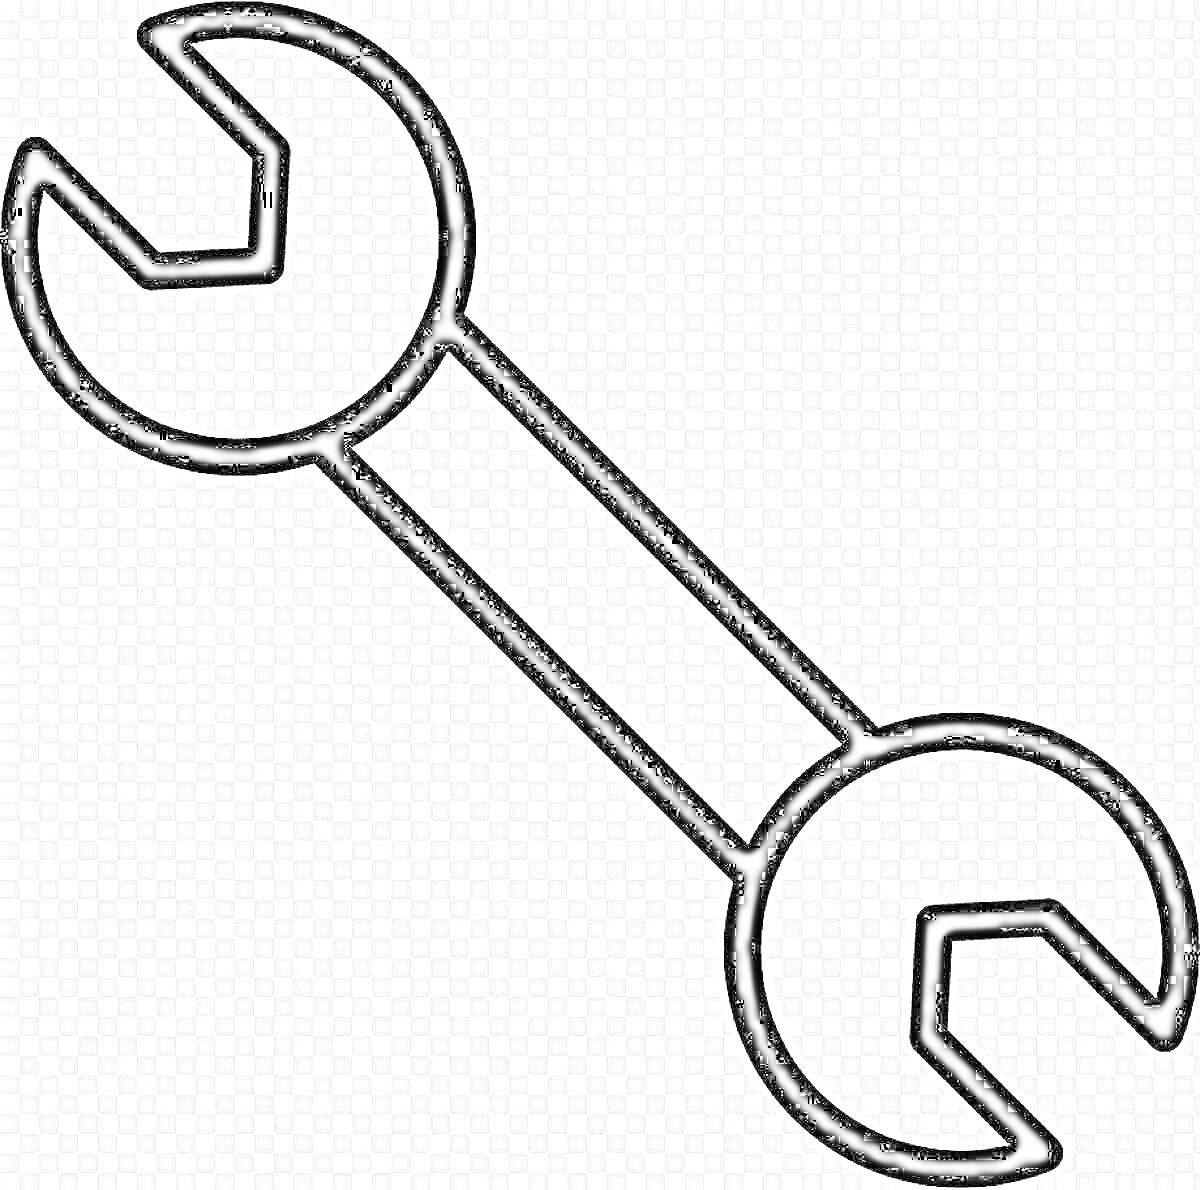 гаечный ключ с открытыми зевами с обеих сторон